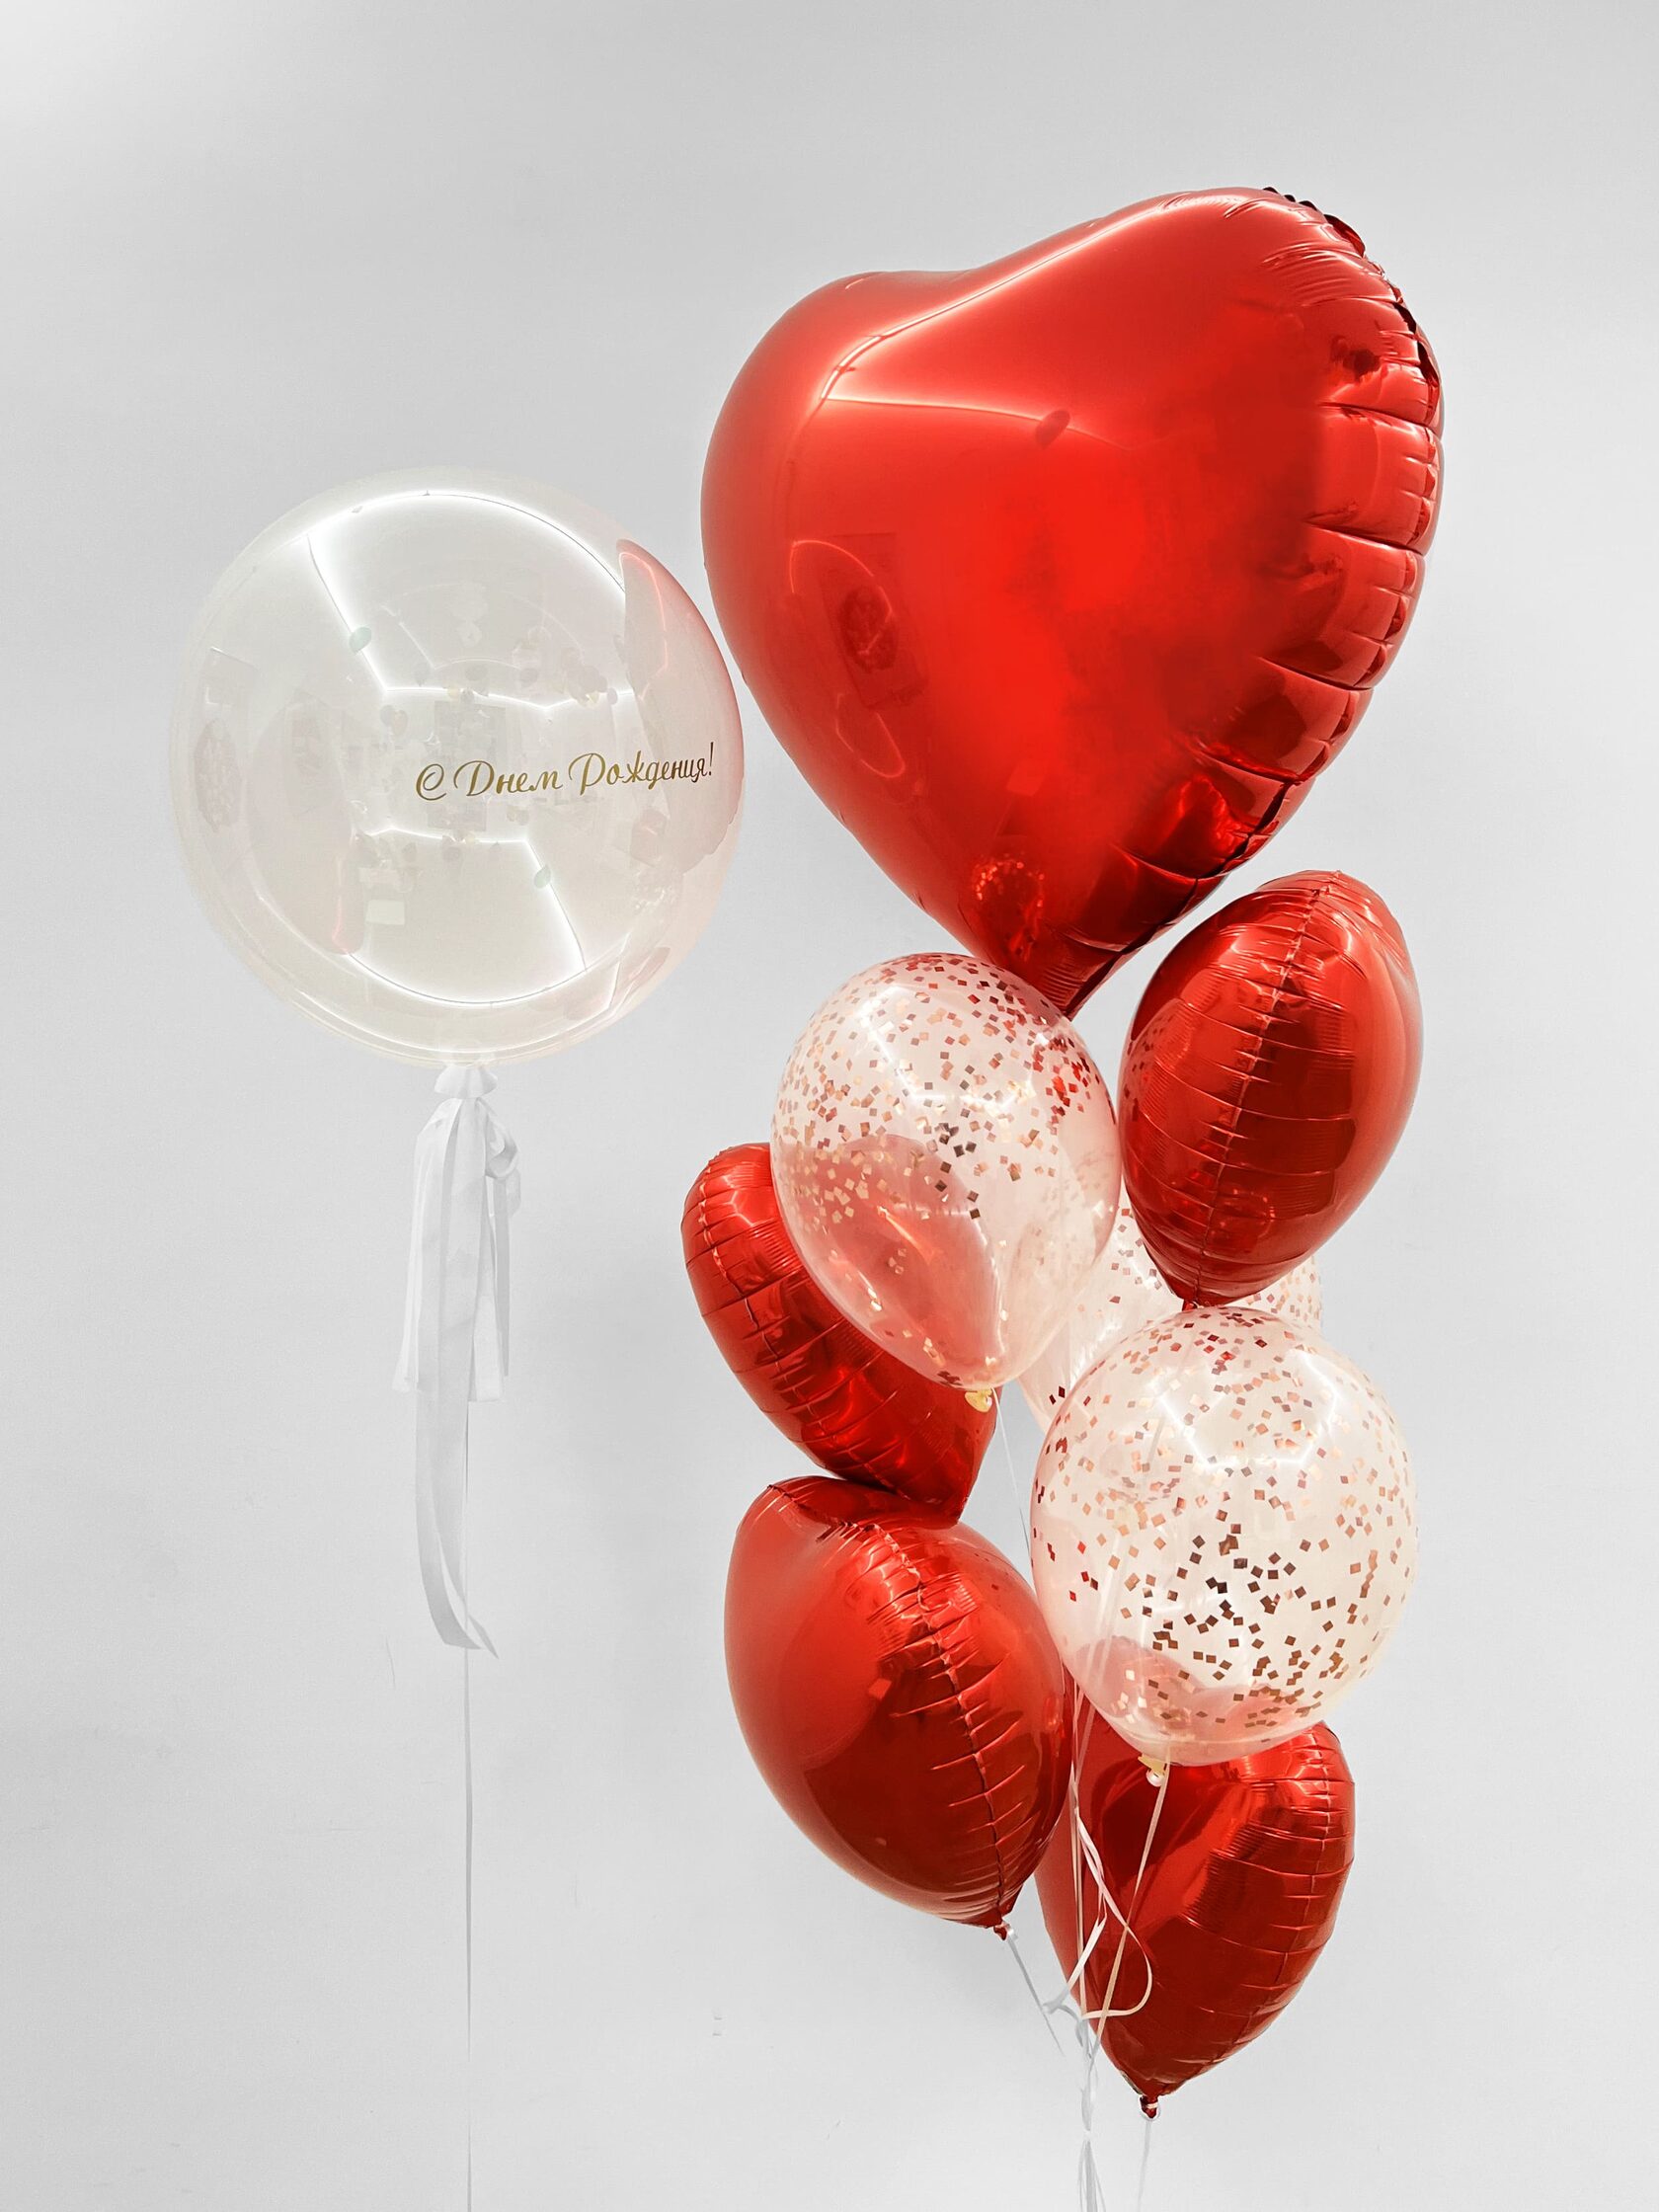 фонтан из воздушных шаров на день рождения пиво Фонтан из шаров «Алое сердце» - 10 шаров + шар Bubbles (сфера) - красные сердца конфетти